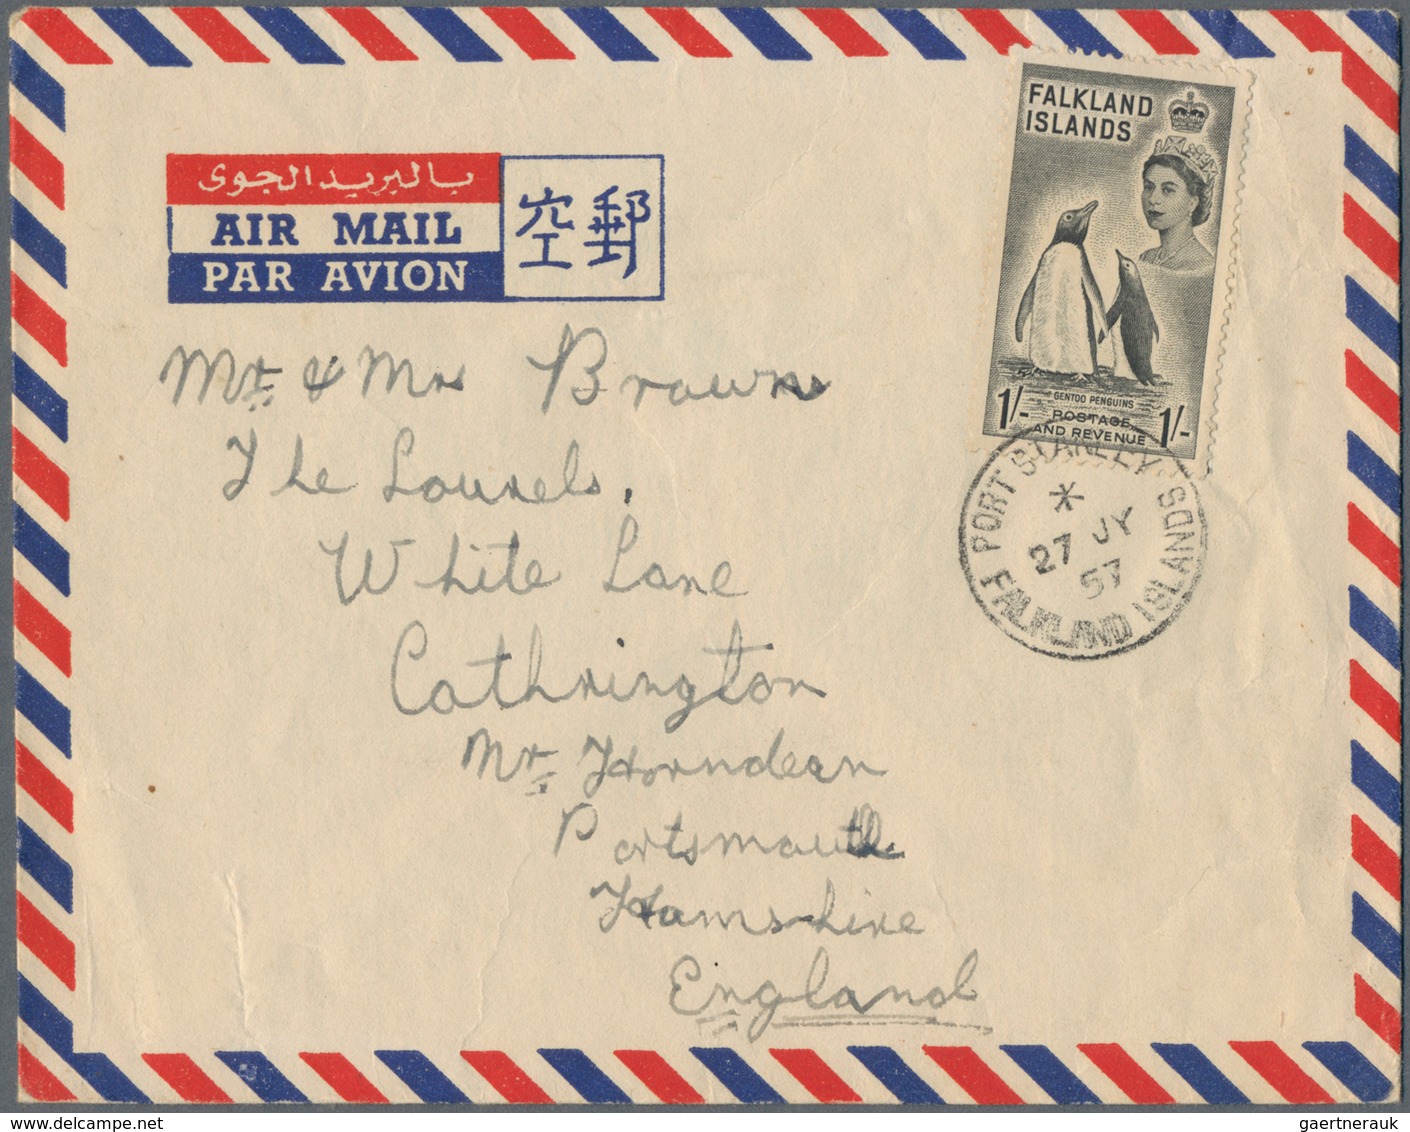 Falklandinseln: 1914/99 holding of ca. 300 postal stationary (unfolded aerograms, registered envelop